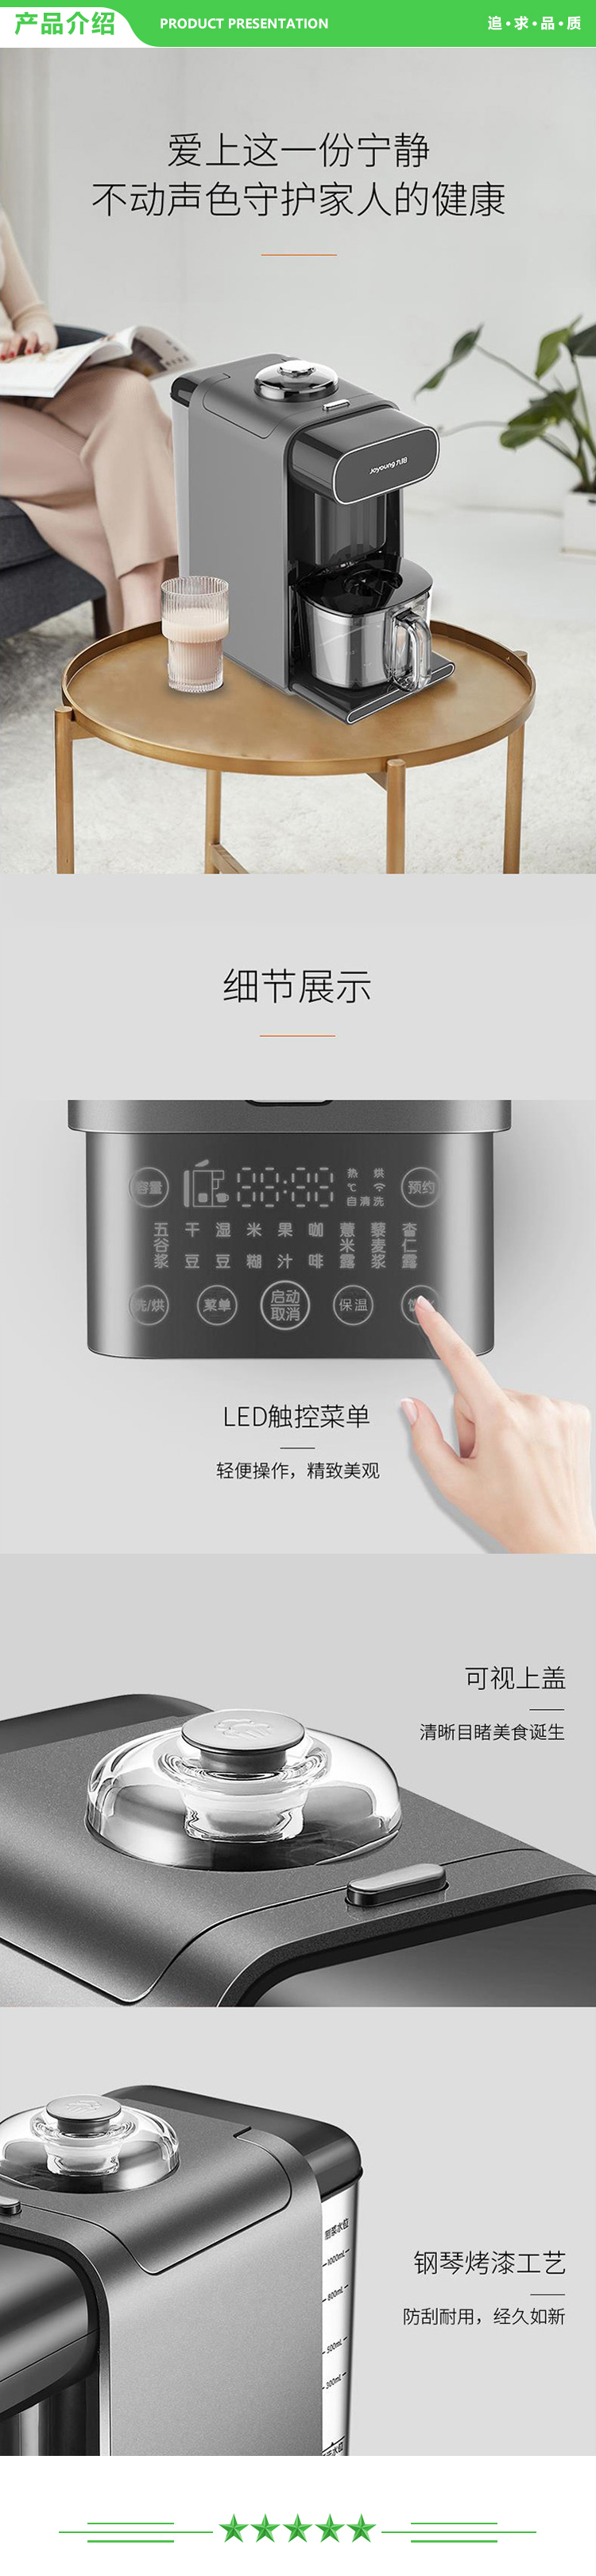 九阳 Joyoung DJ10R-K1SPro  破壁机 多功能双预约破壁免滤无渣豆浆机咖啡机免手洗.jpg